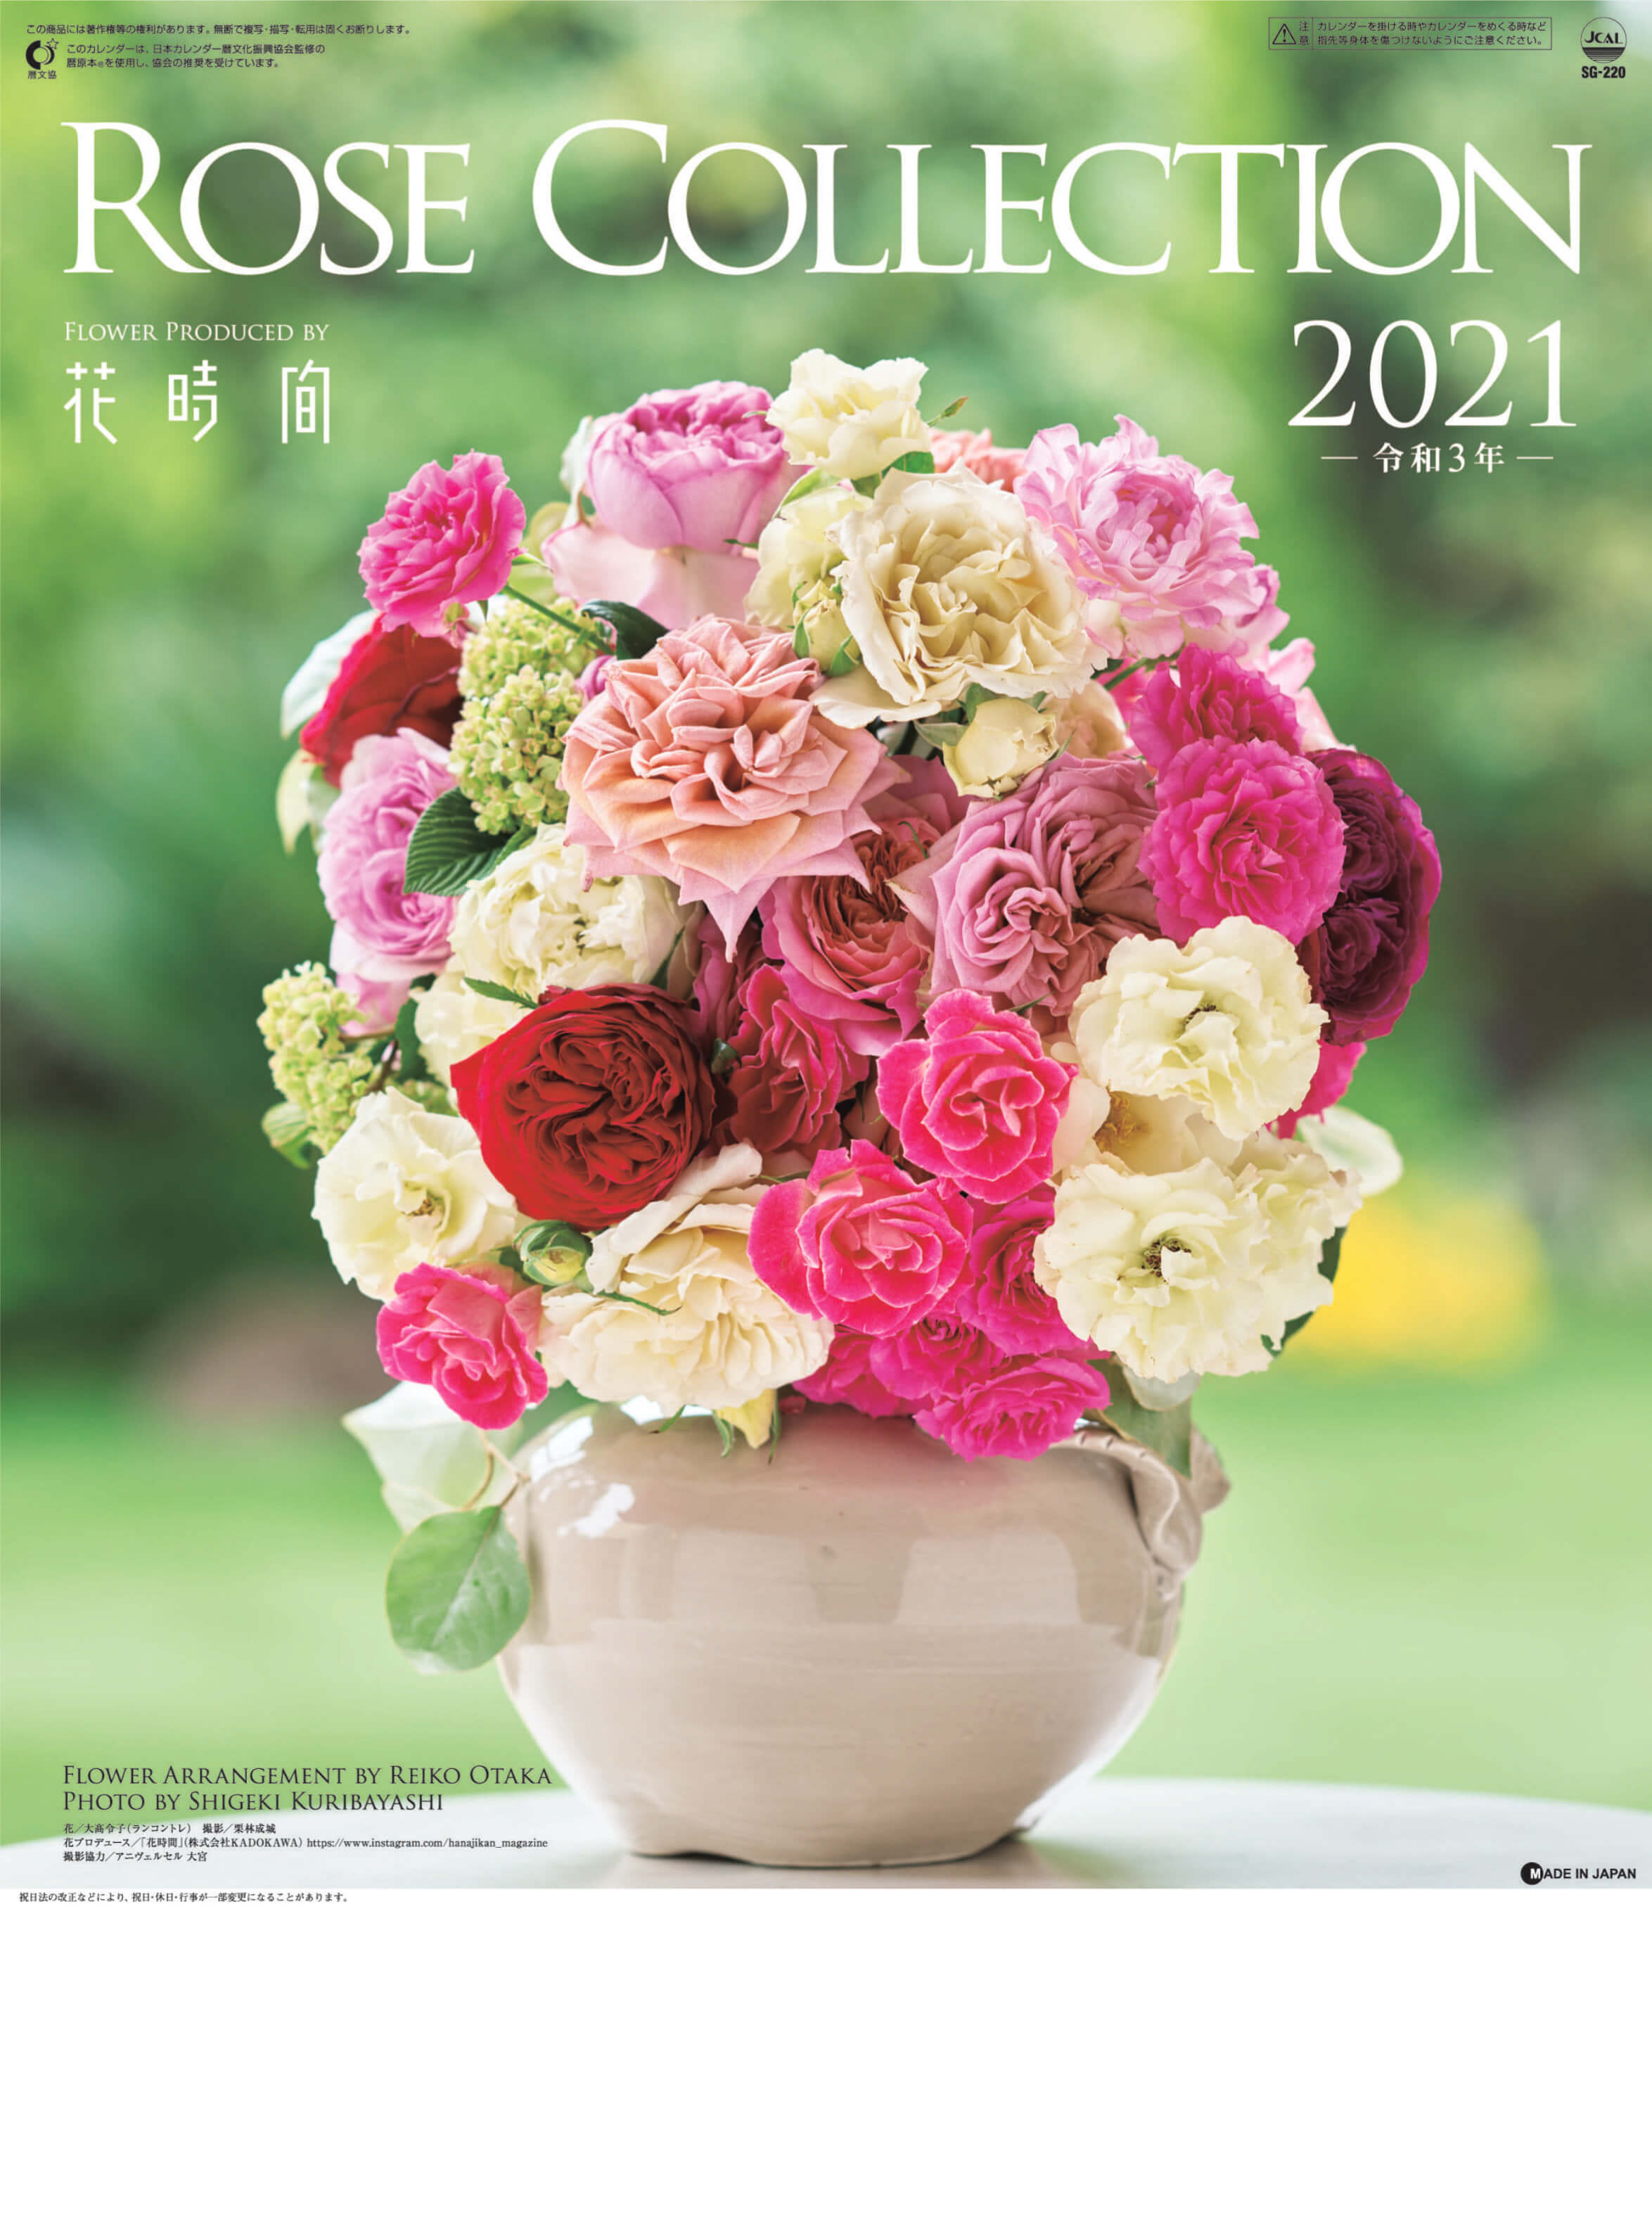 Sg 2 ローズコレクション 21年カレンダー バラの写真カレンダー カレンダーの通販サイト E カレンダー Com 1部からでも送料無料でお届け